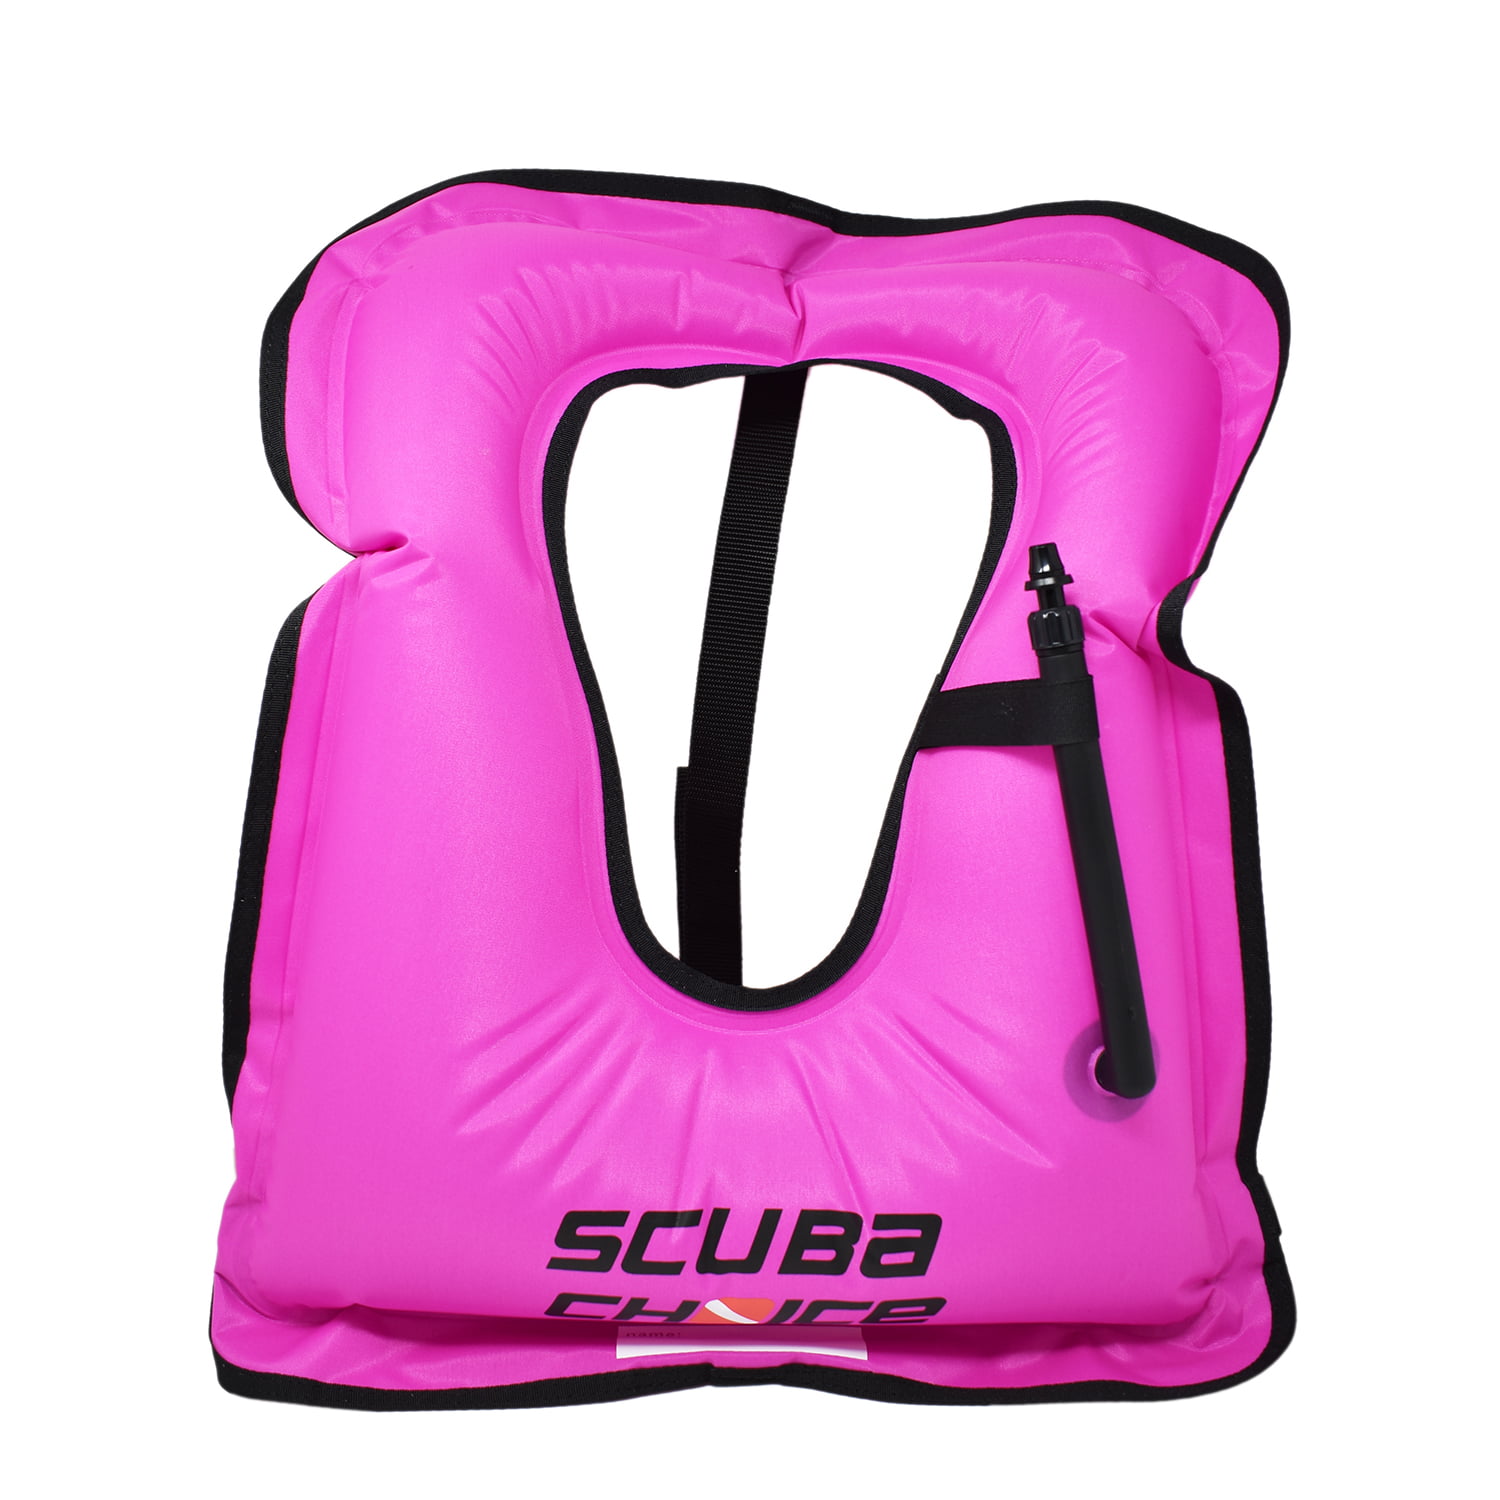 Size XL Scuba Choice Diving Snorkeling Adult Purple Snorkel Vest w/ Name Box 